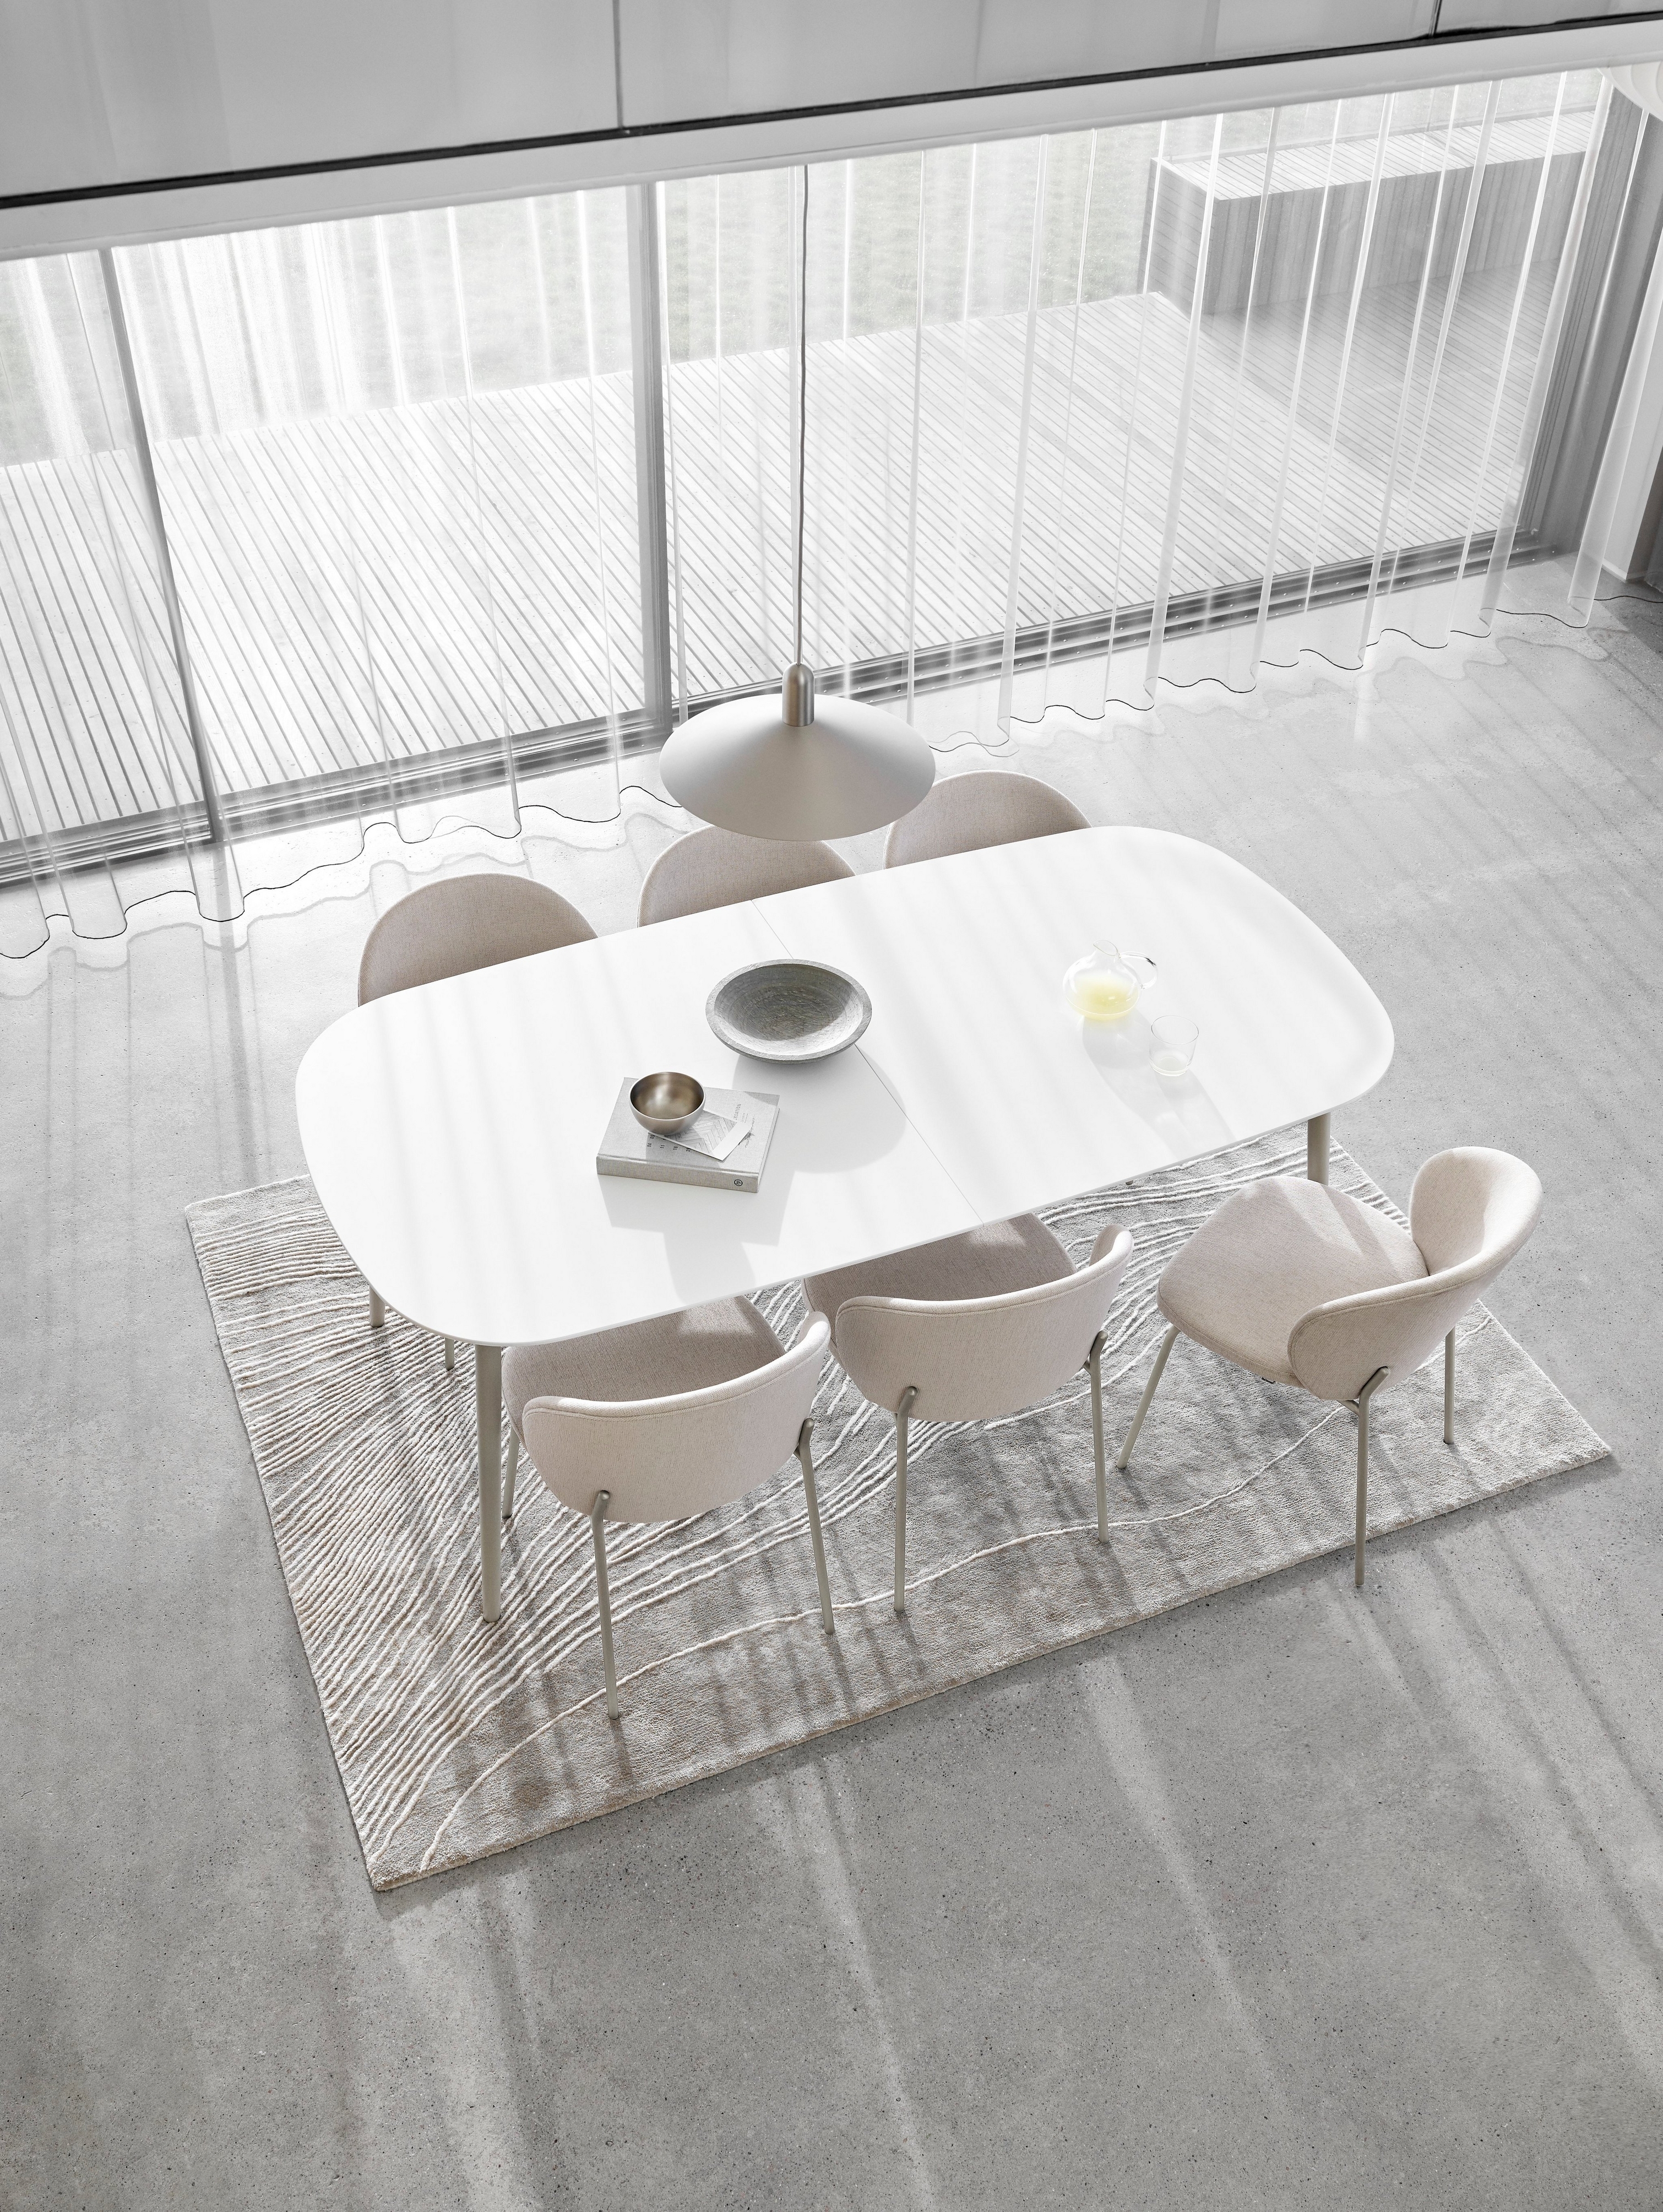 Minimalistyczna jadalnia z białym owalnym stołem, krzesłami, przezroczystymi zasłonami i teksturowanym dywanem.